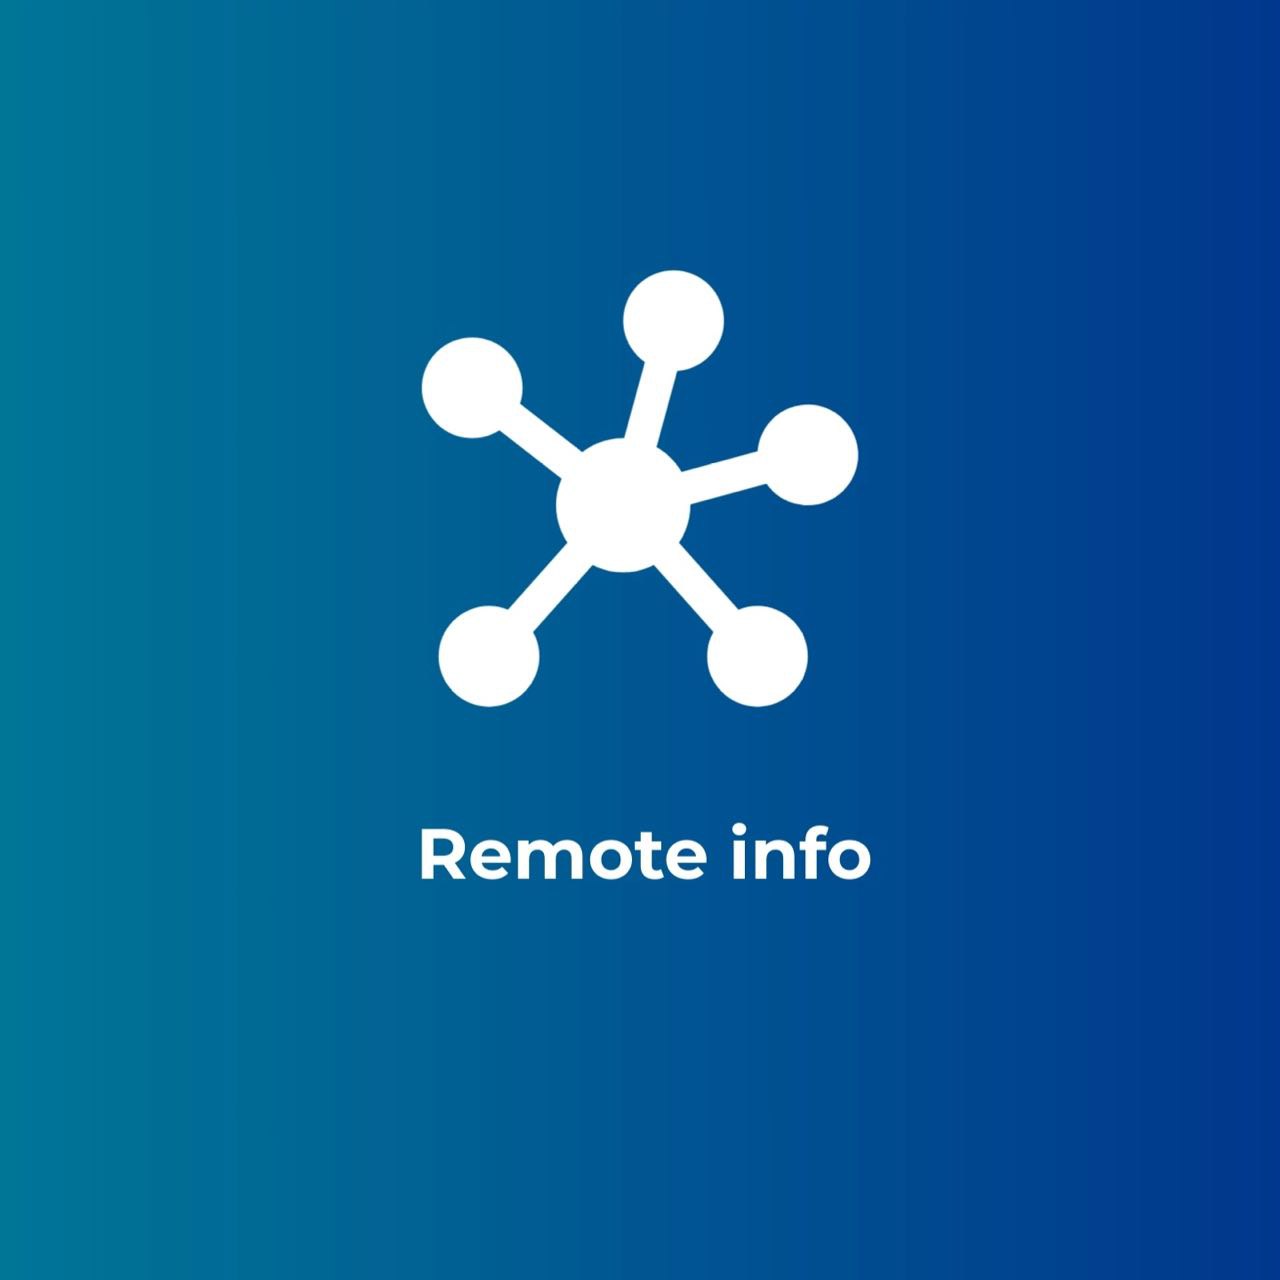 Remote info